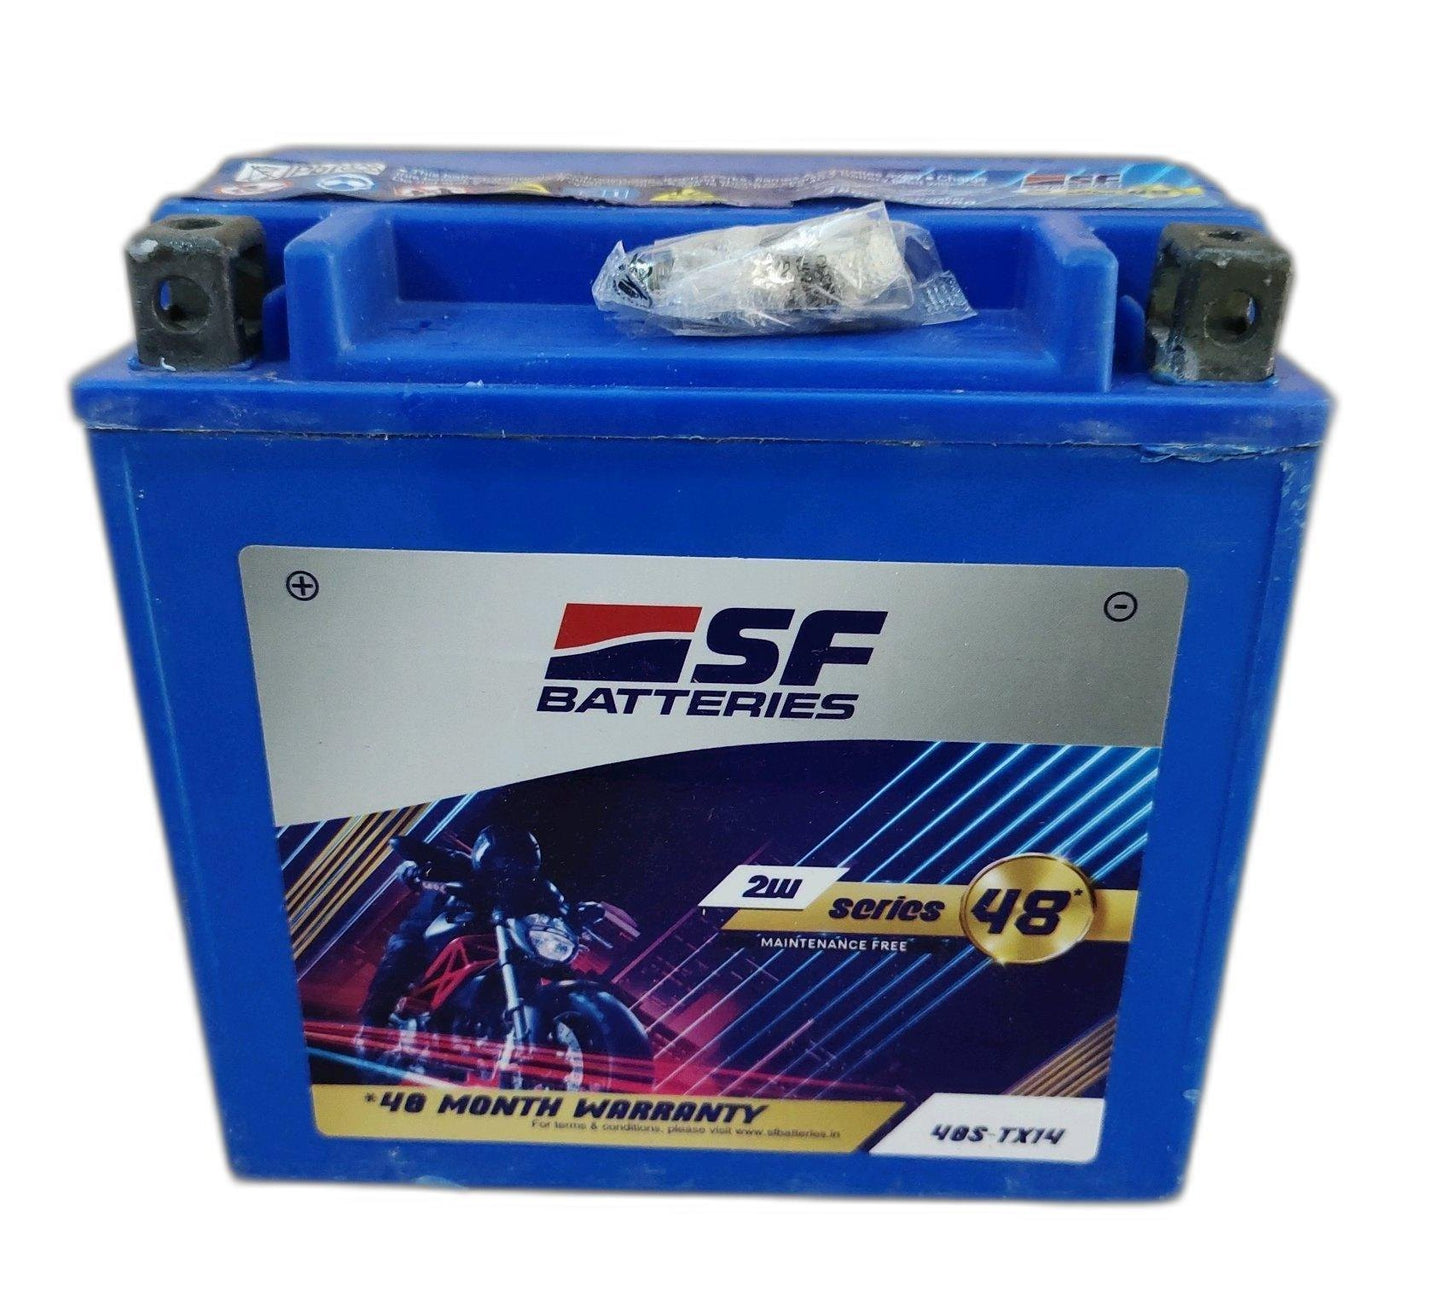 SF Sonic 48S-TX14 - 12AH Bike Battery - 48 Months Warranty